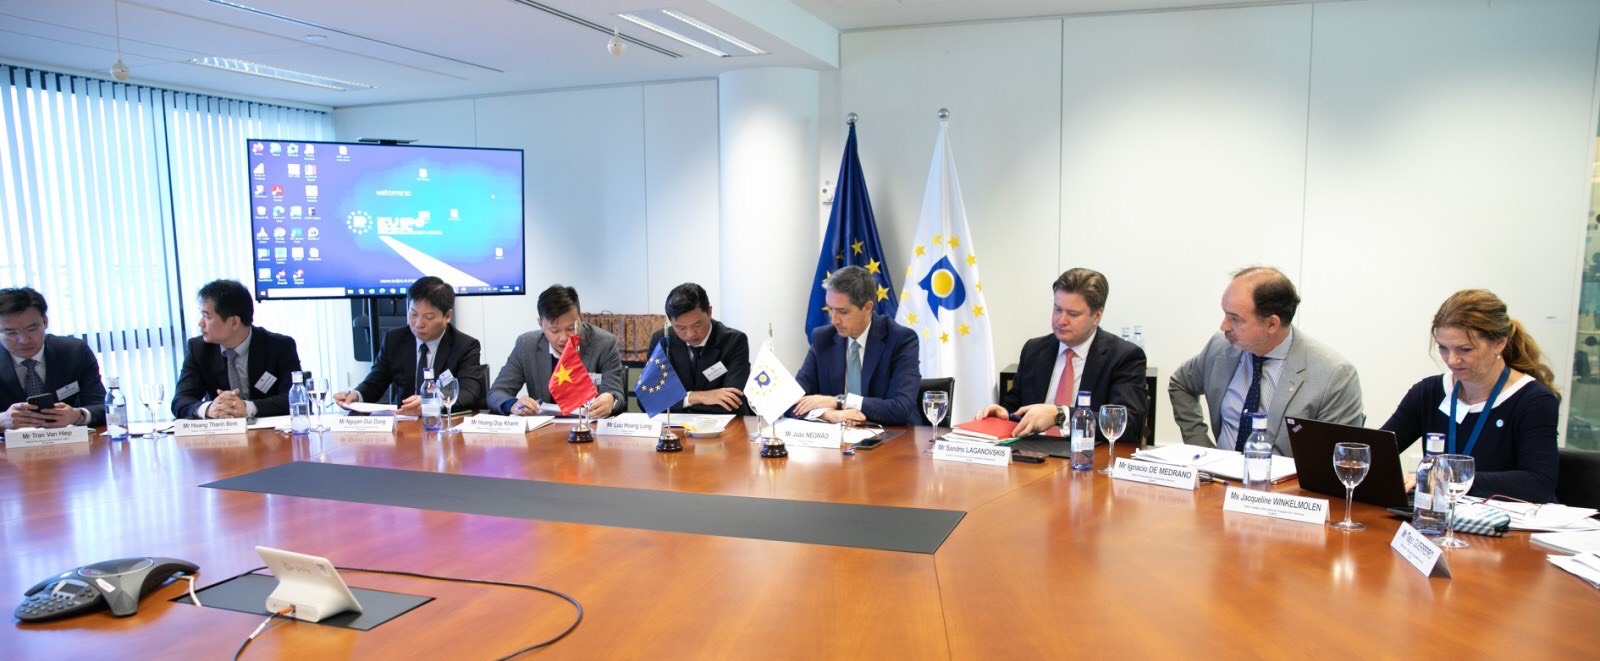 Cuộc họp song phương cấp Cục trưởng giữa Cục Sở hữu trí tuệ và Cơ quan Sở hữu trí tuệ châu Âu